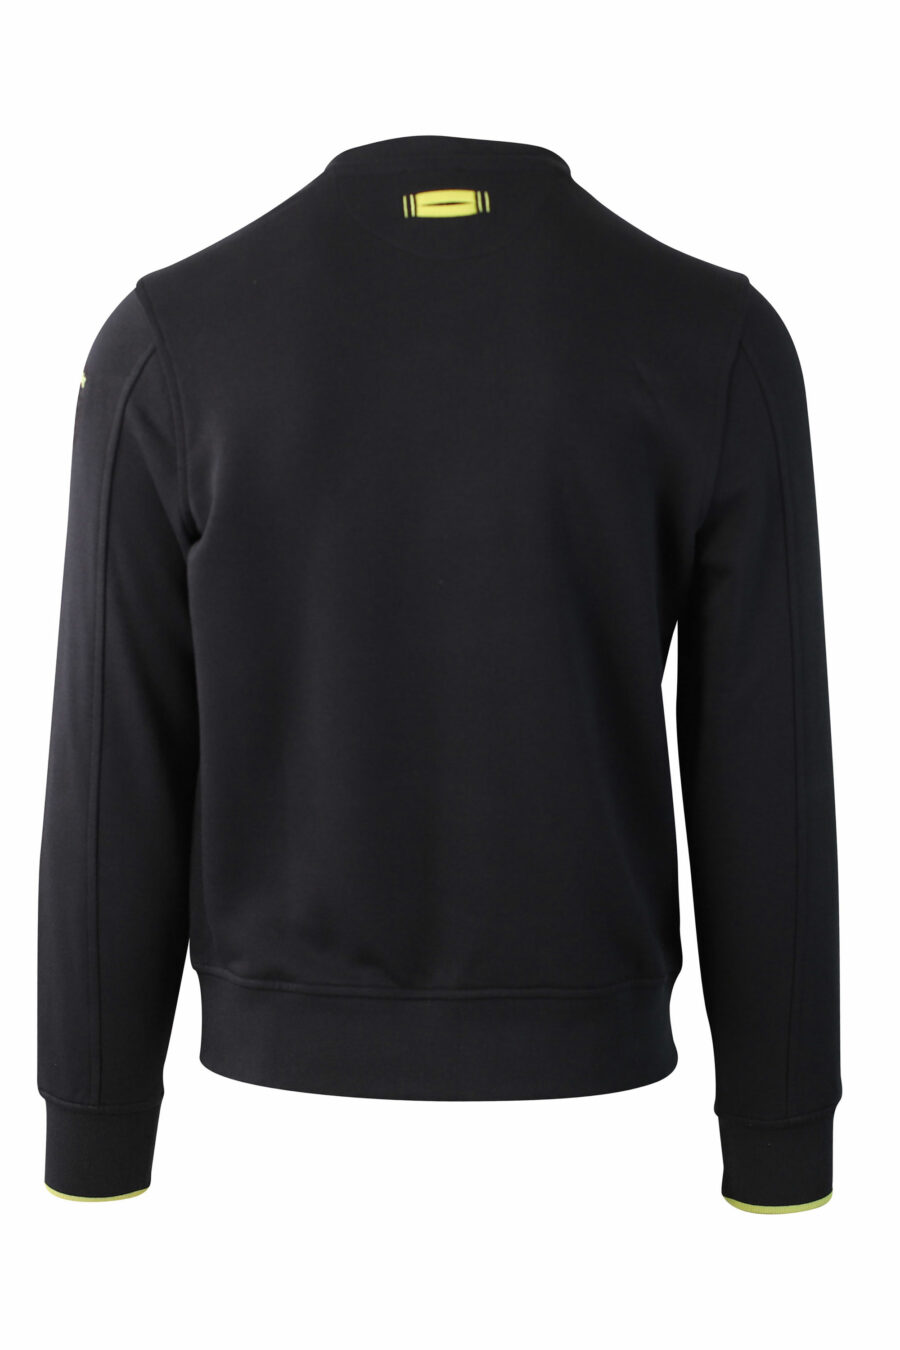 Schwarzes Sweatshirt mit einfarbigem Samt-Maxilogo - IMG 0032 1